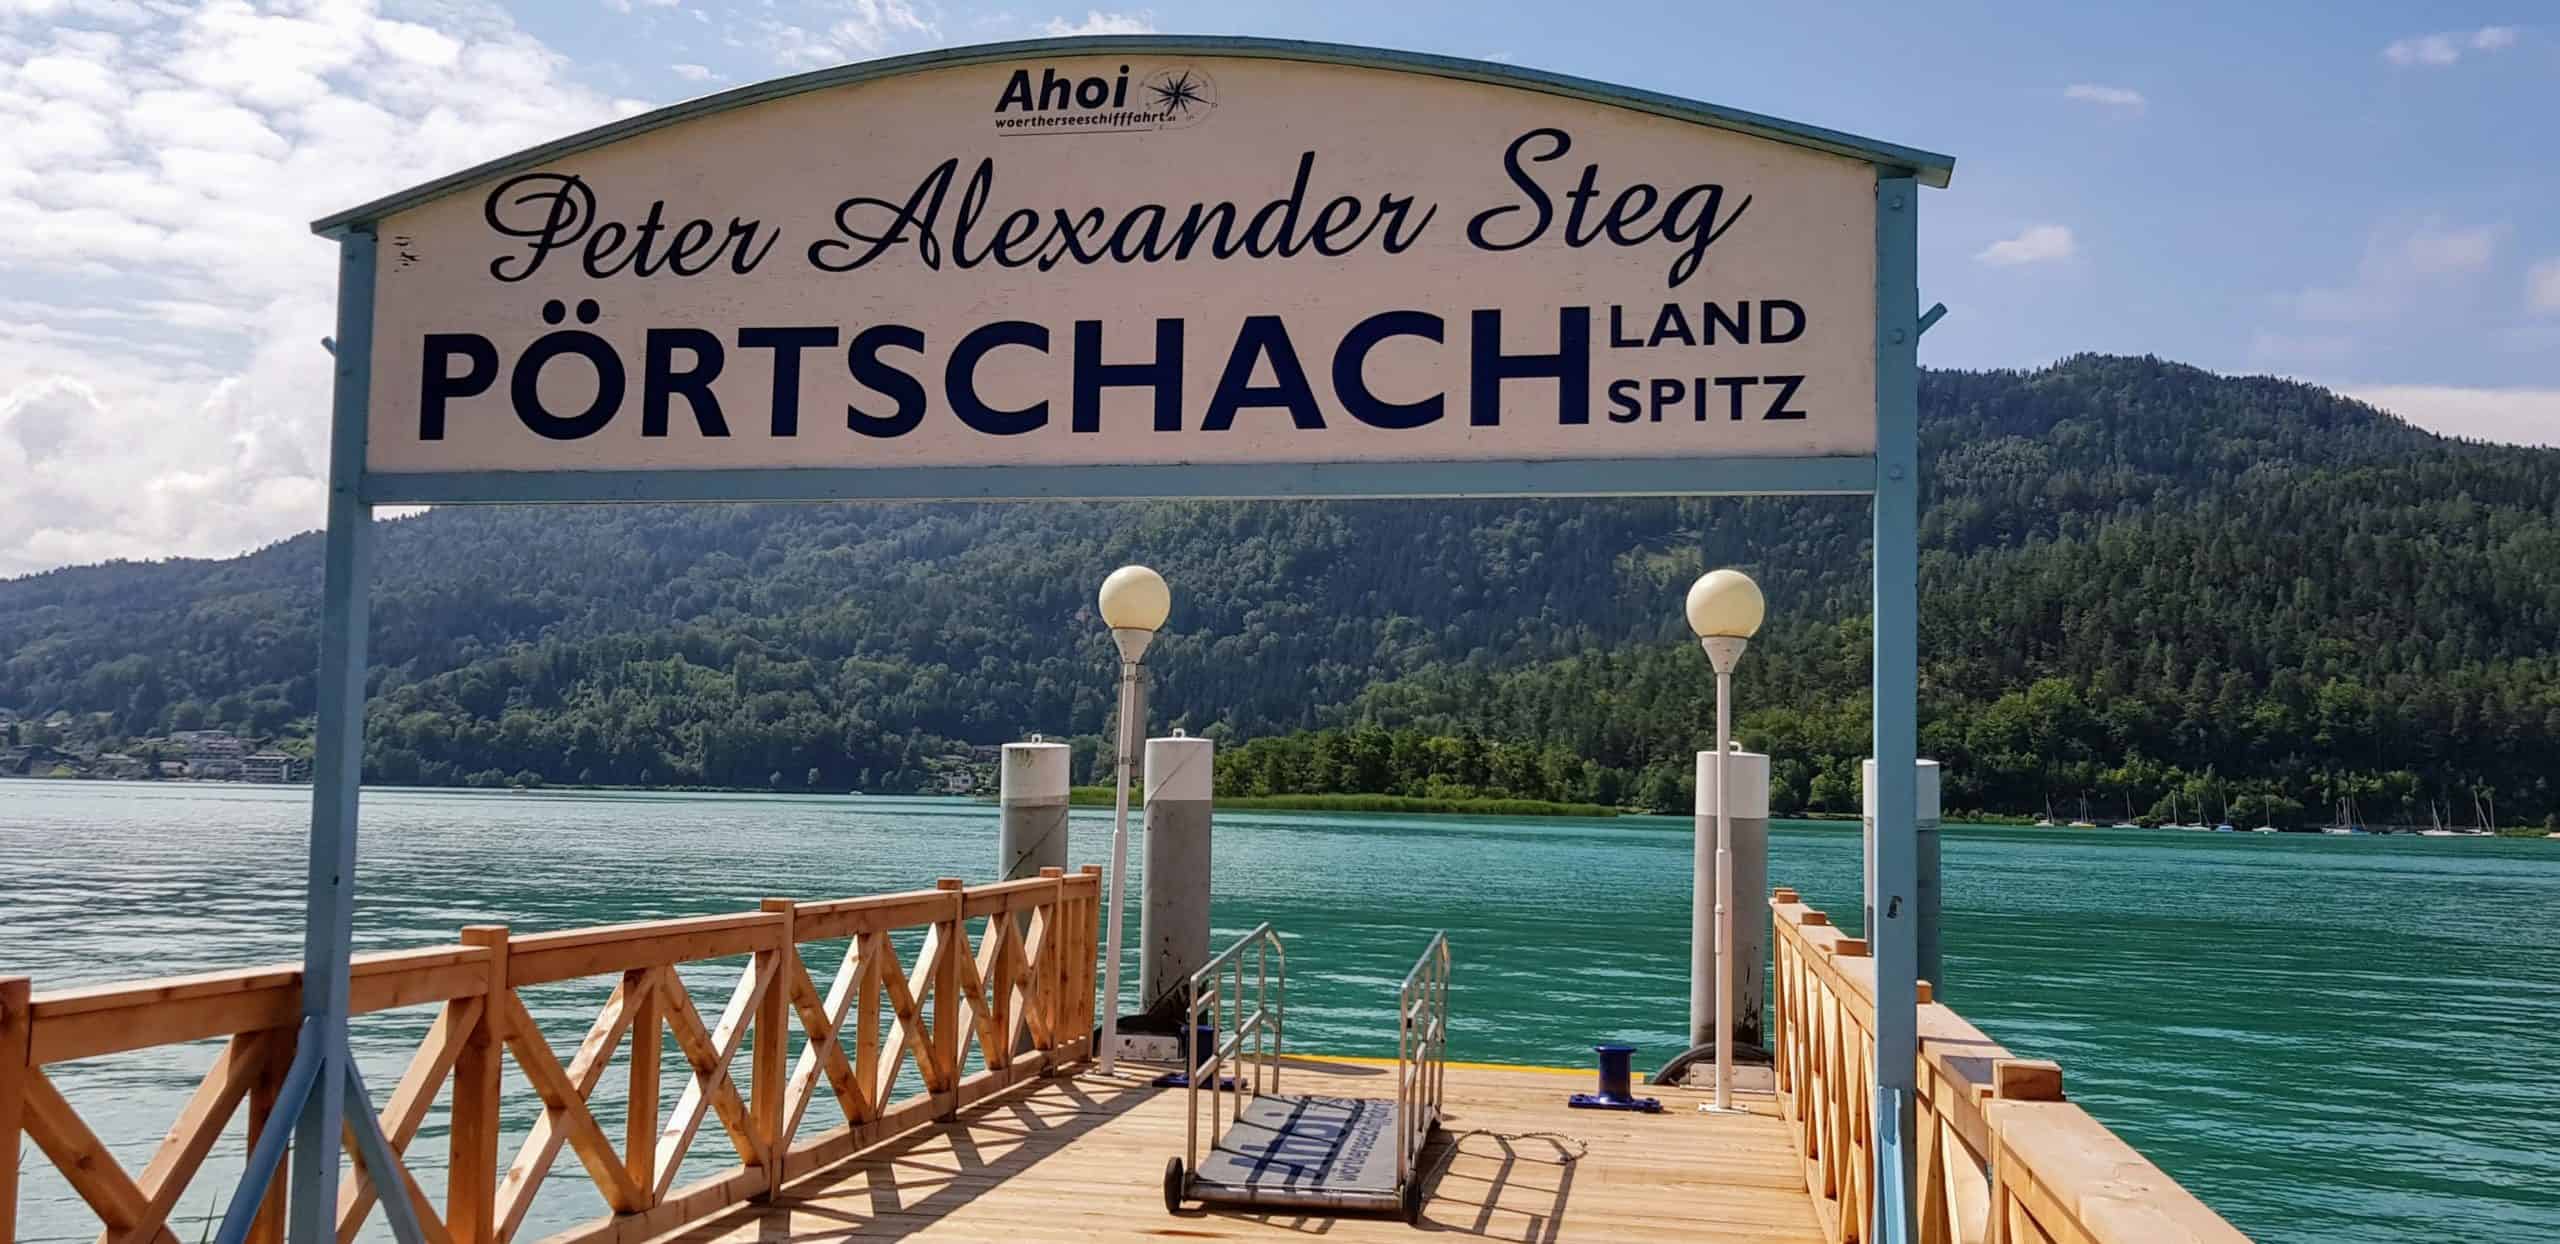 Peter Alexander Steg in Pörtschach am Wörthersee - Schiffsanlegestelle Pörtschach Landspitz